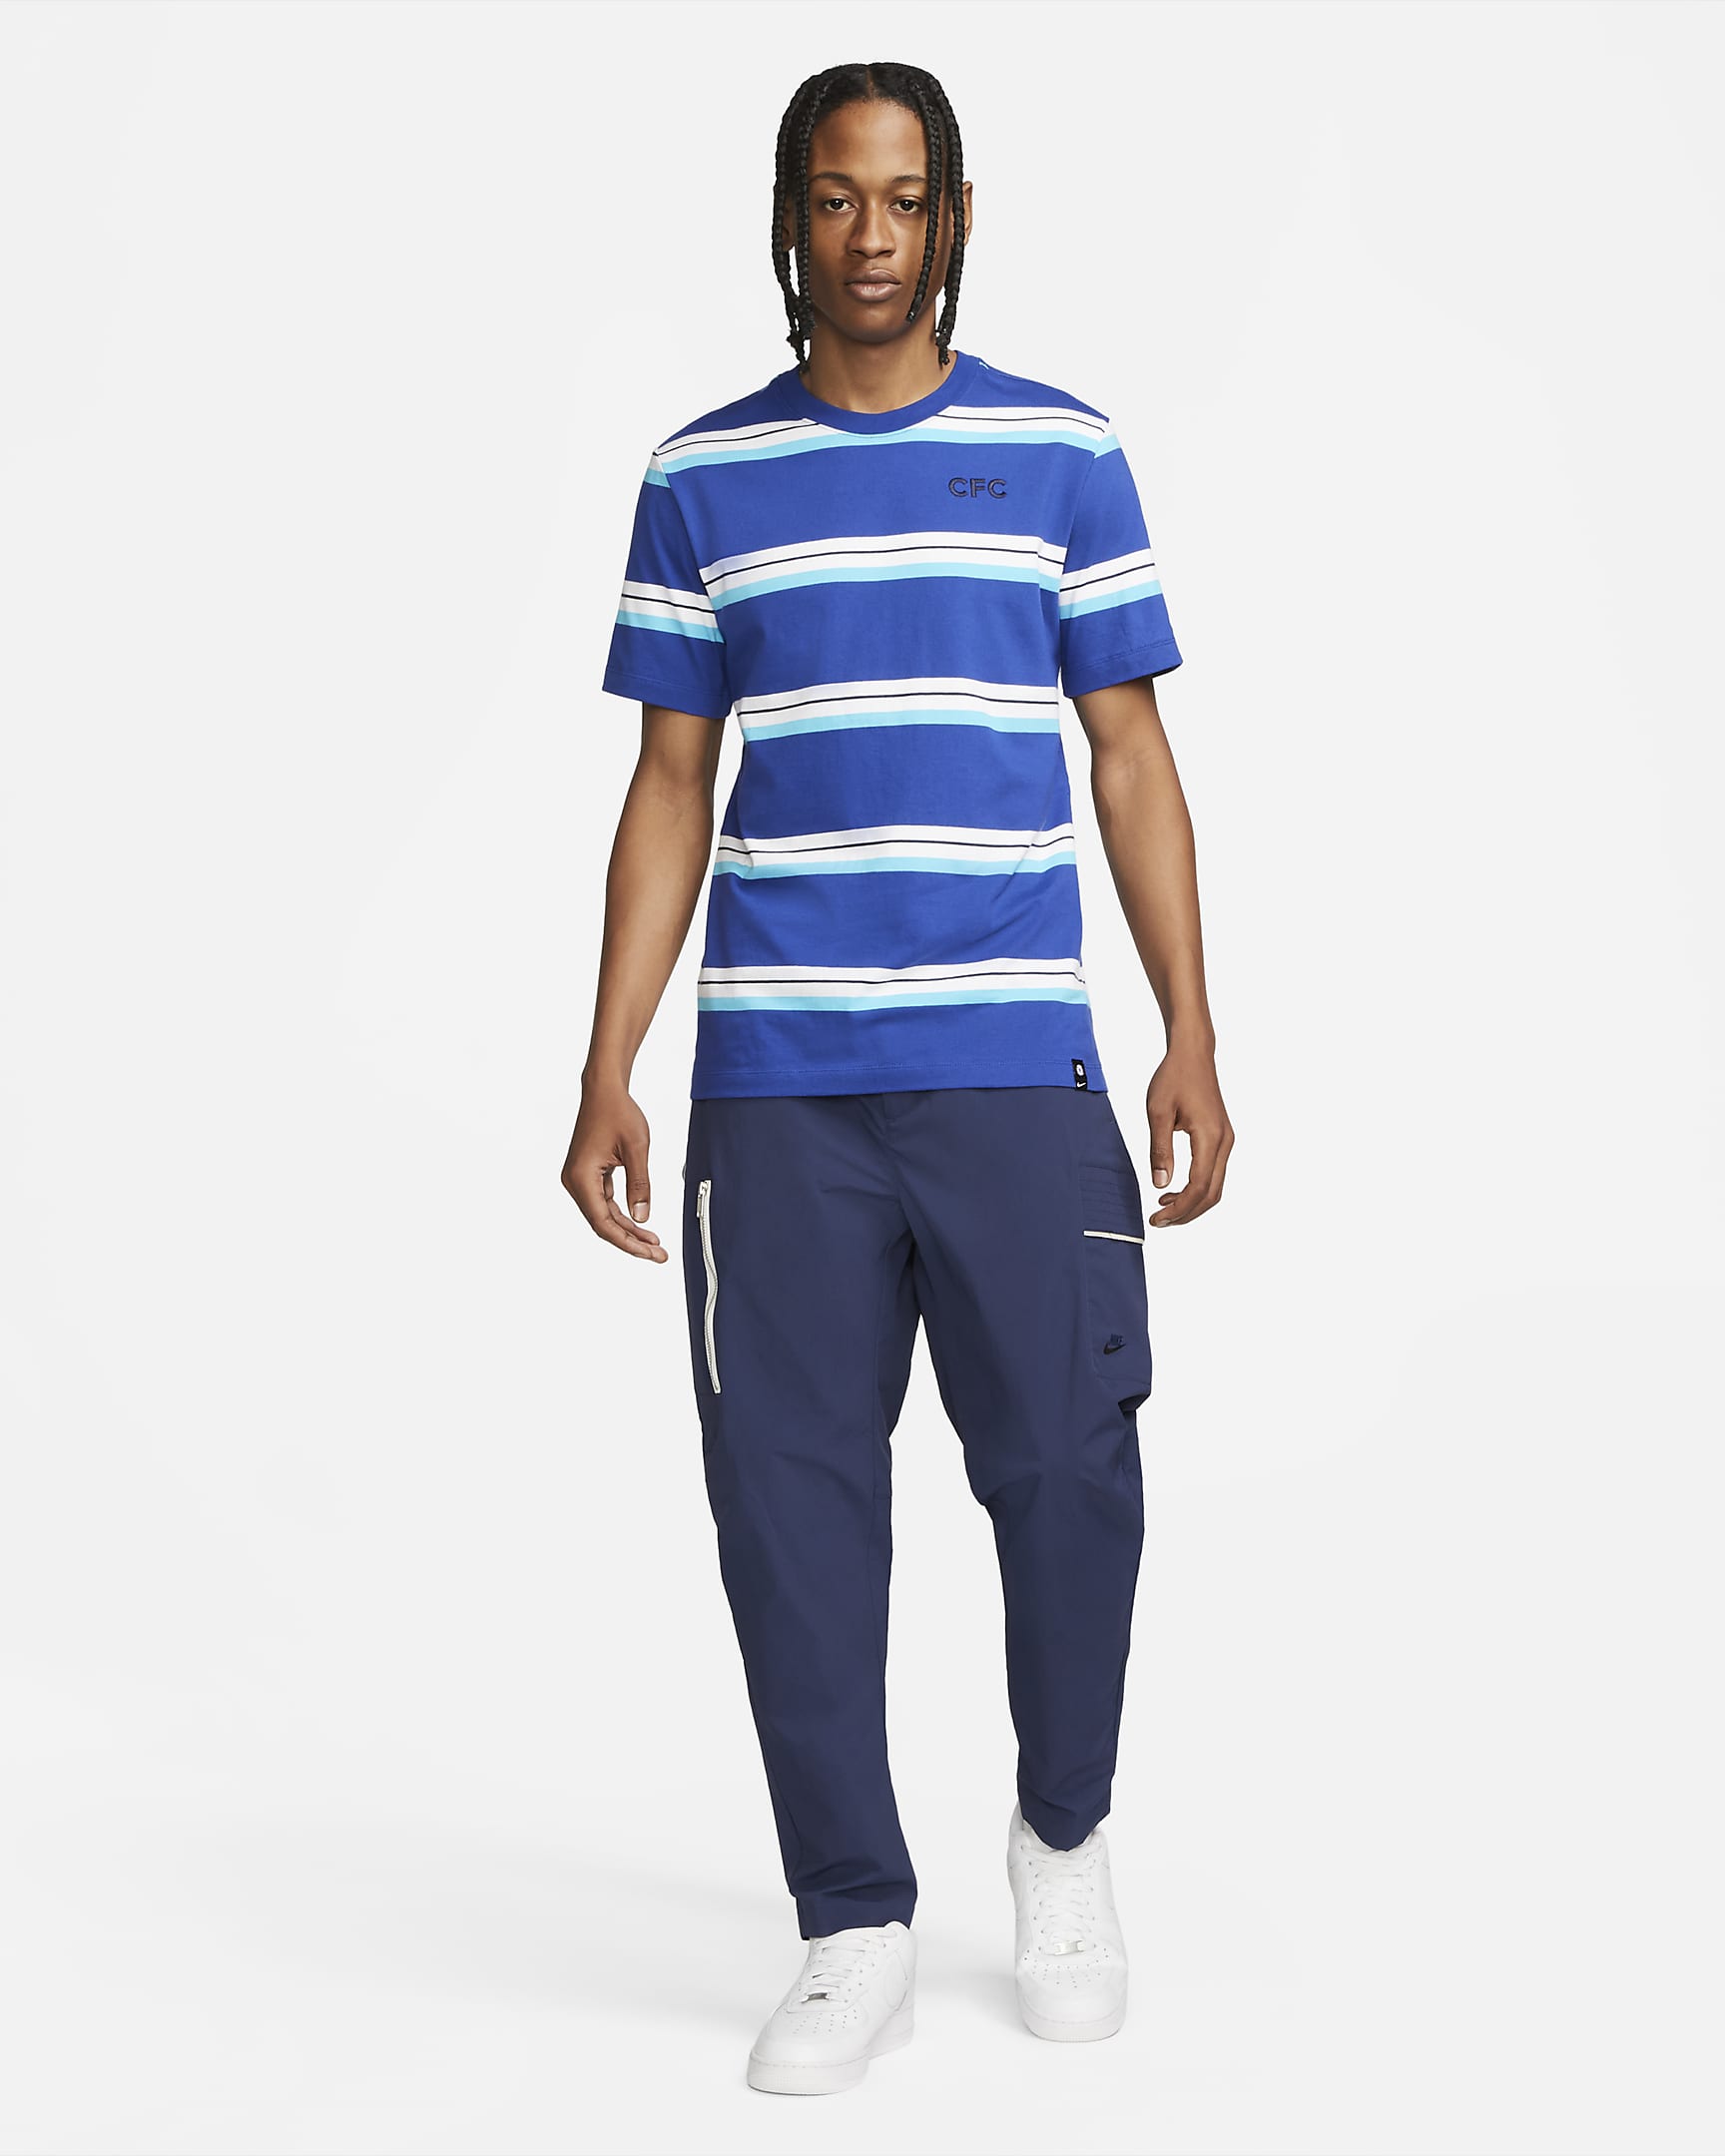 Chelsea FC Men's Soccer T-Shirt. Nike.com